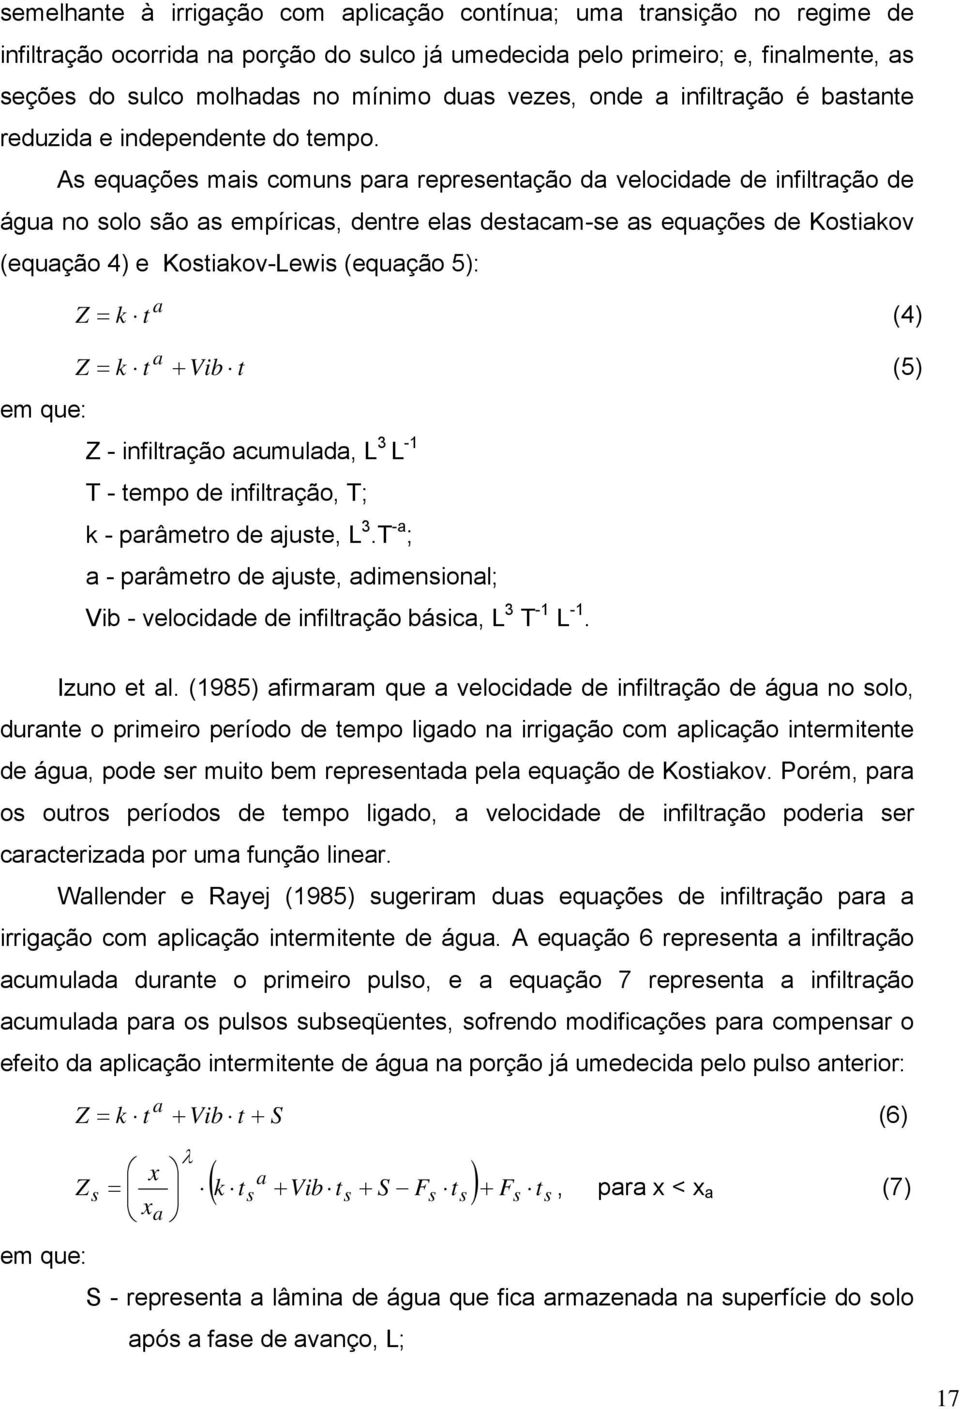 As equações mais comuns para representação da velocidade de infiltração de água no solo são as empíricas, dentre elas destacam-se as equações de Kostiakov (equação 4) e Kostiakov-Lewis (equação 5): Z